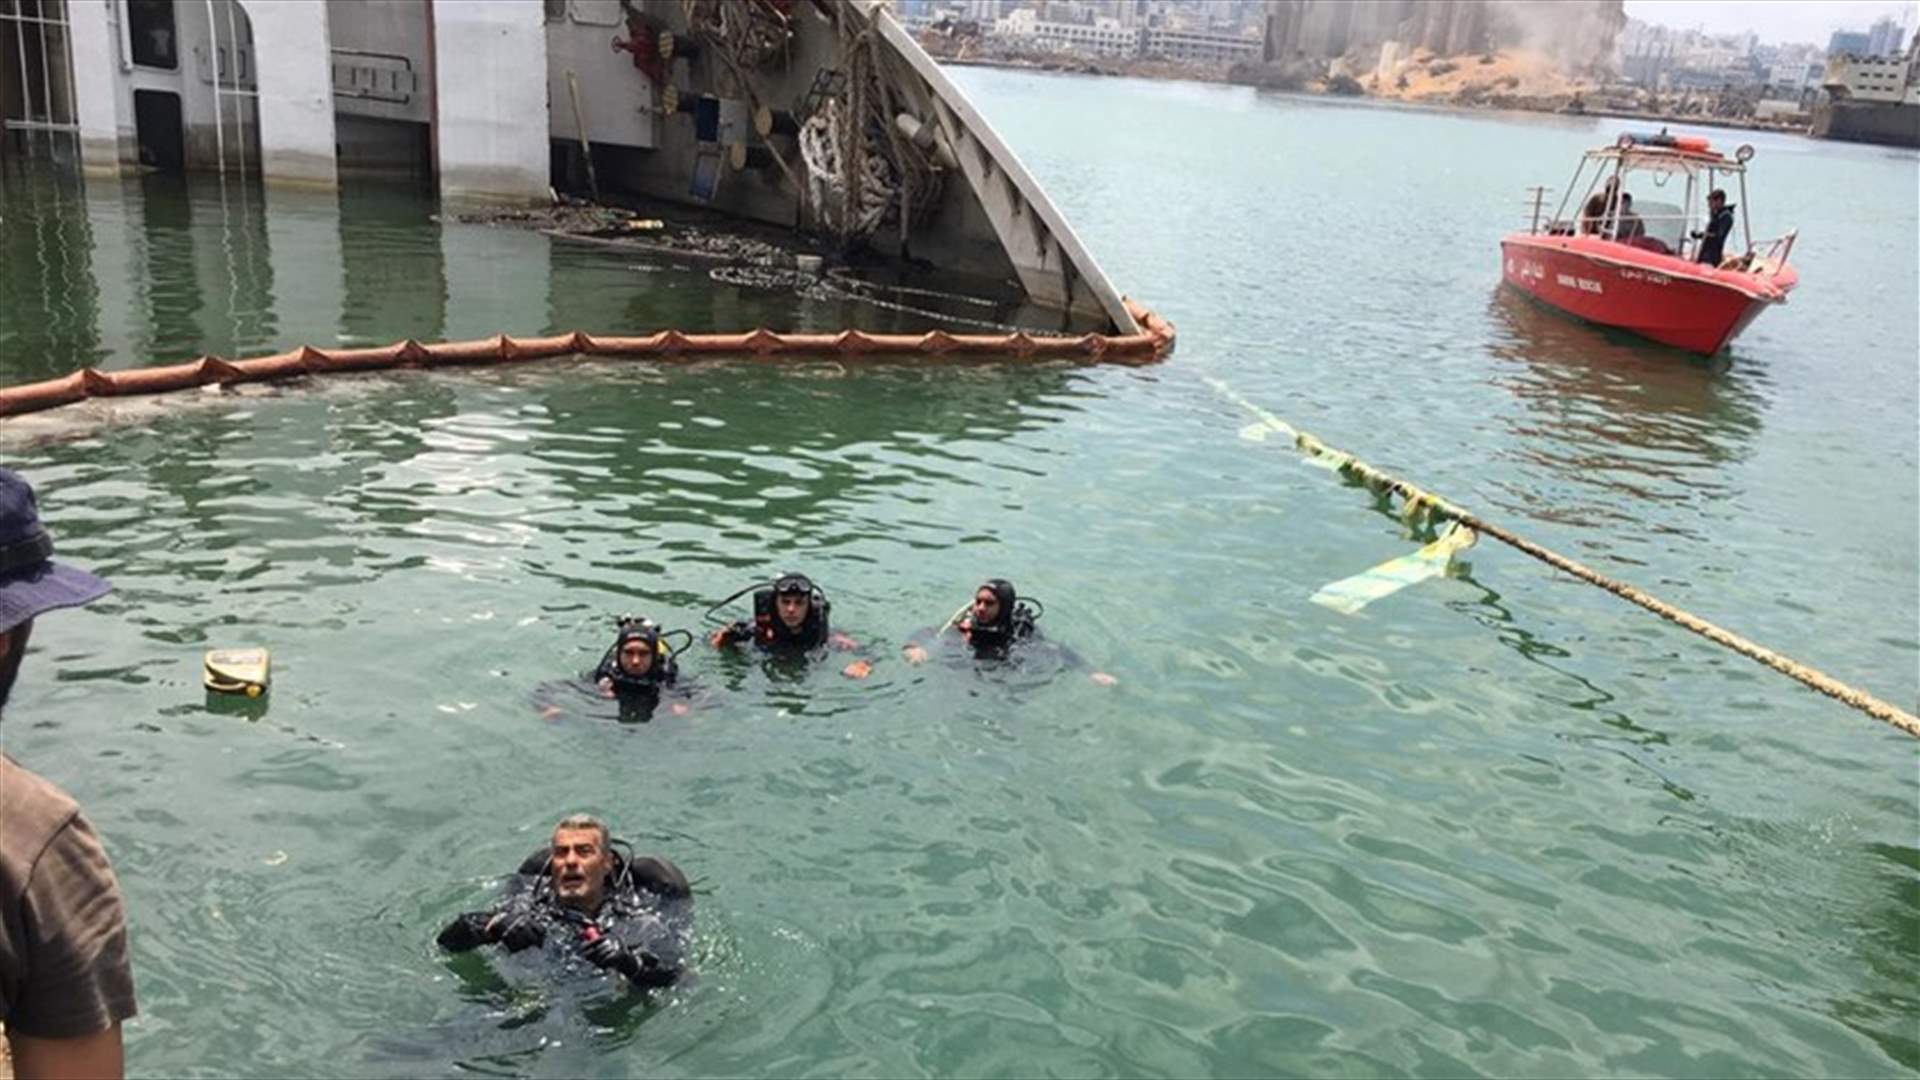 انتشال جثة من داخل سيارة من البحر قبالة مرفأ بيروت (صور)